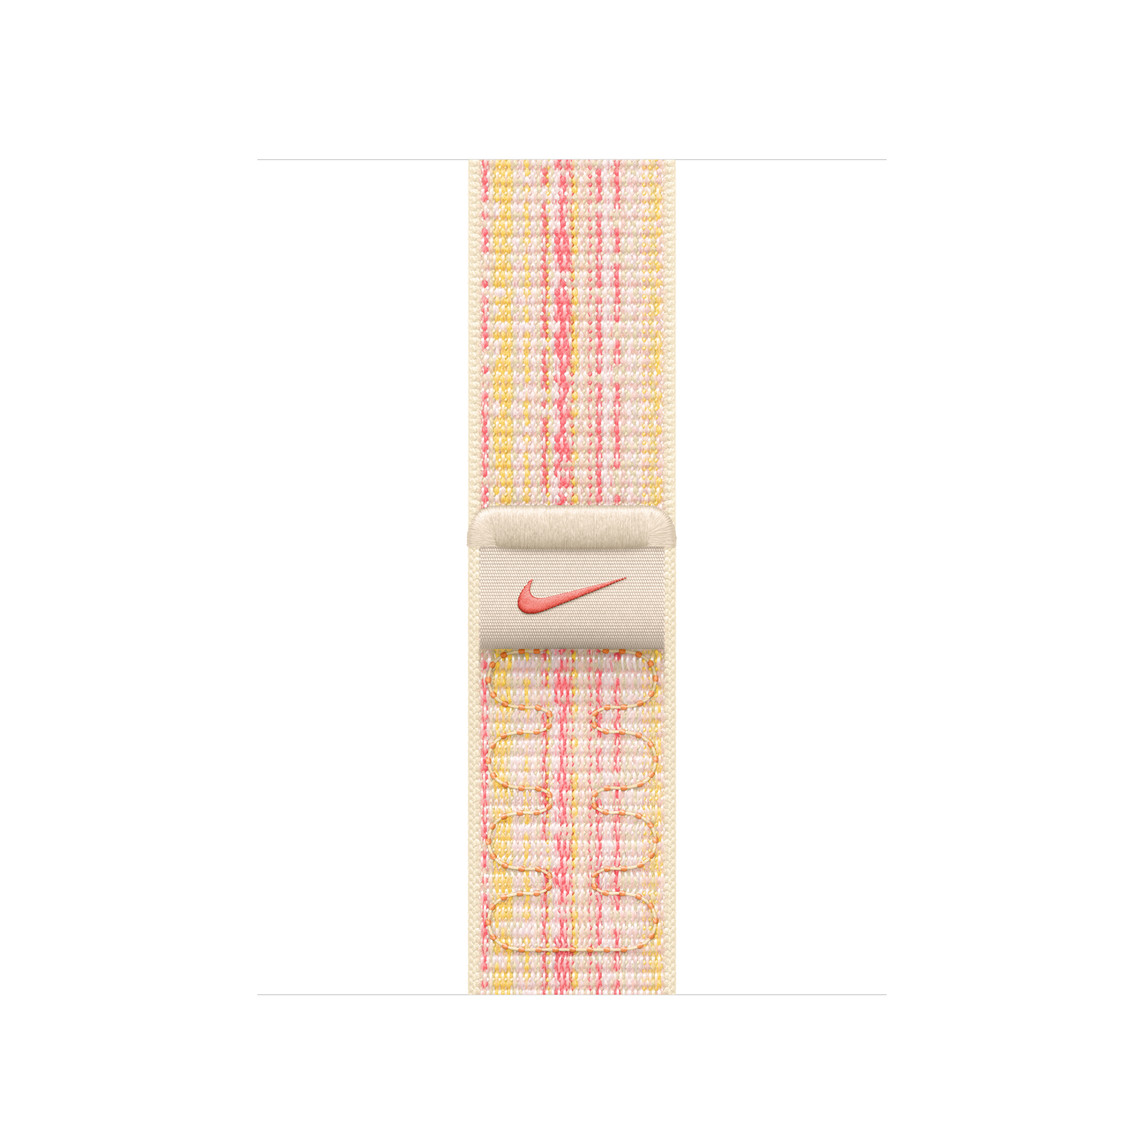 Correa loop deportiva blanco estelar/rosado hecha de nylon tejido con el Swoosh de Nike y cierre adhesivo ajustable